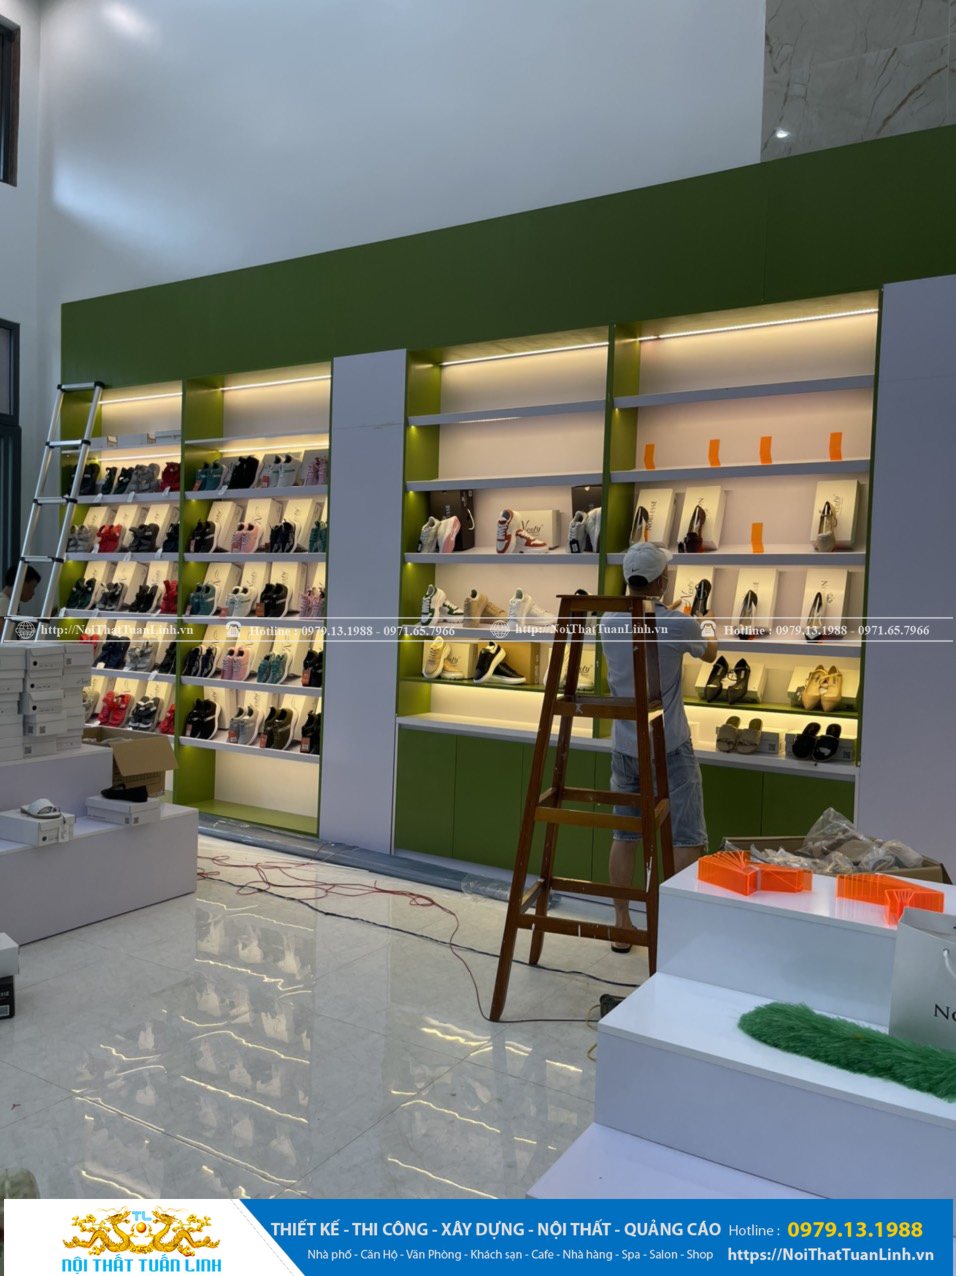 Báo giá thiết kế thi công nội thất shop thời trang Minh Khang Sport tại Phú Giáo Bình Dương 28